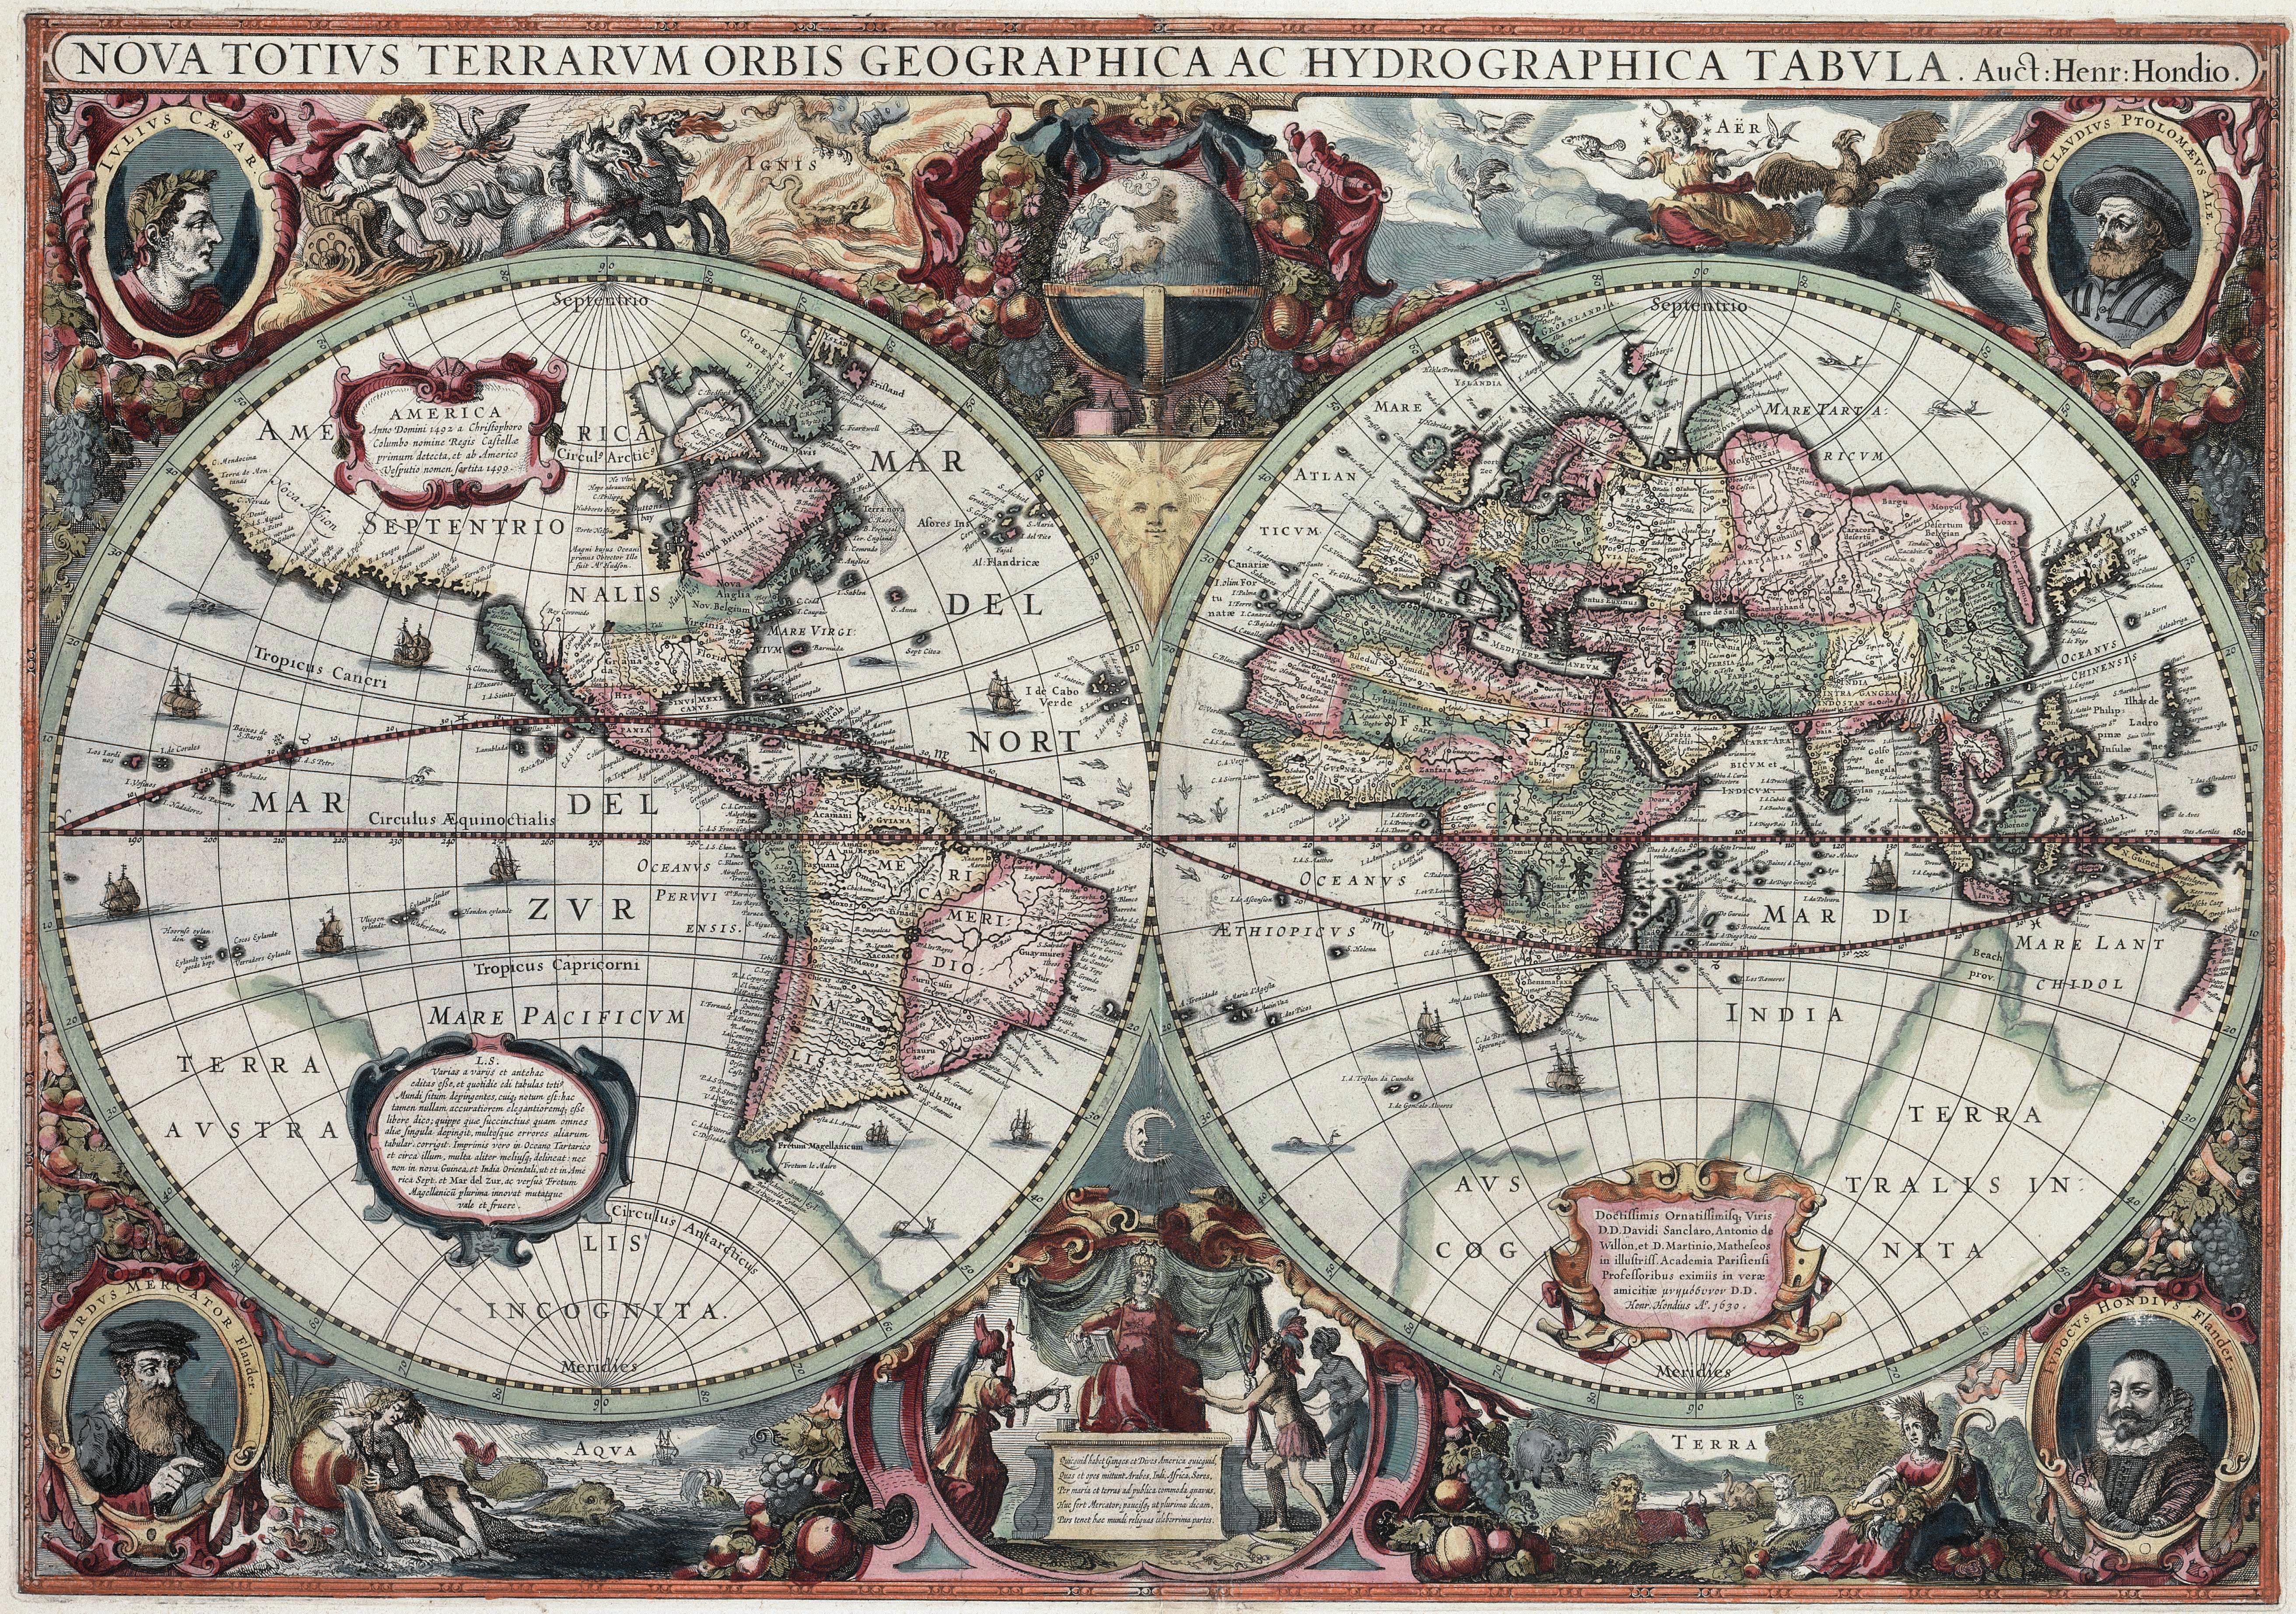 maps, world map - desktop wallpaper